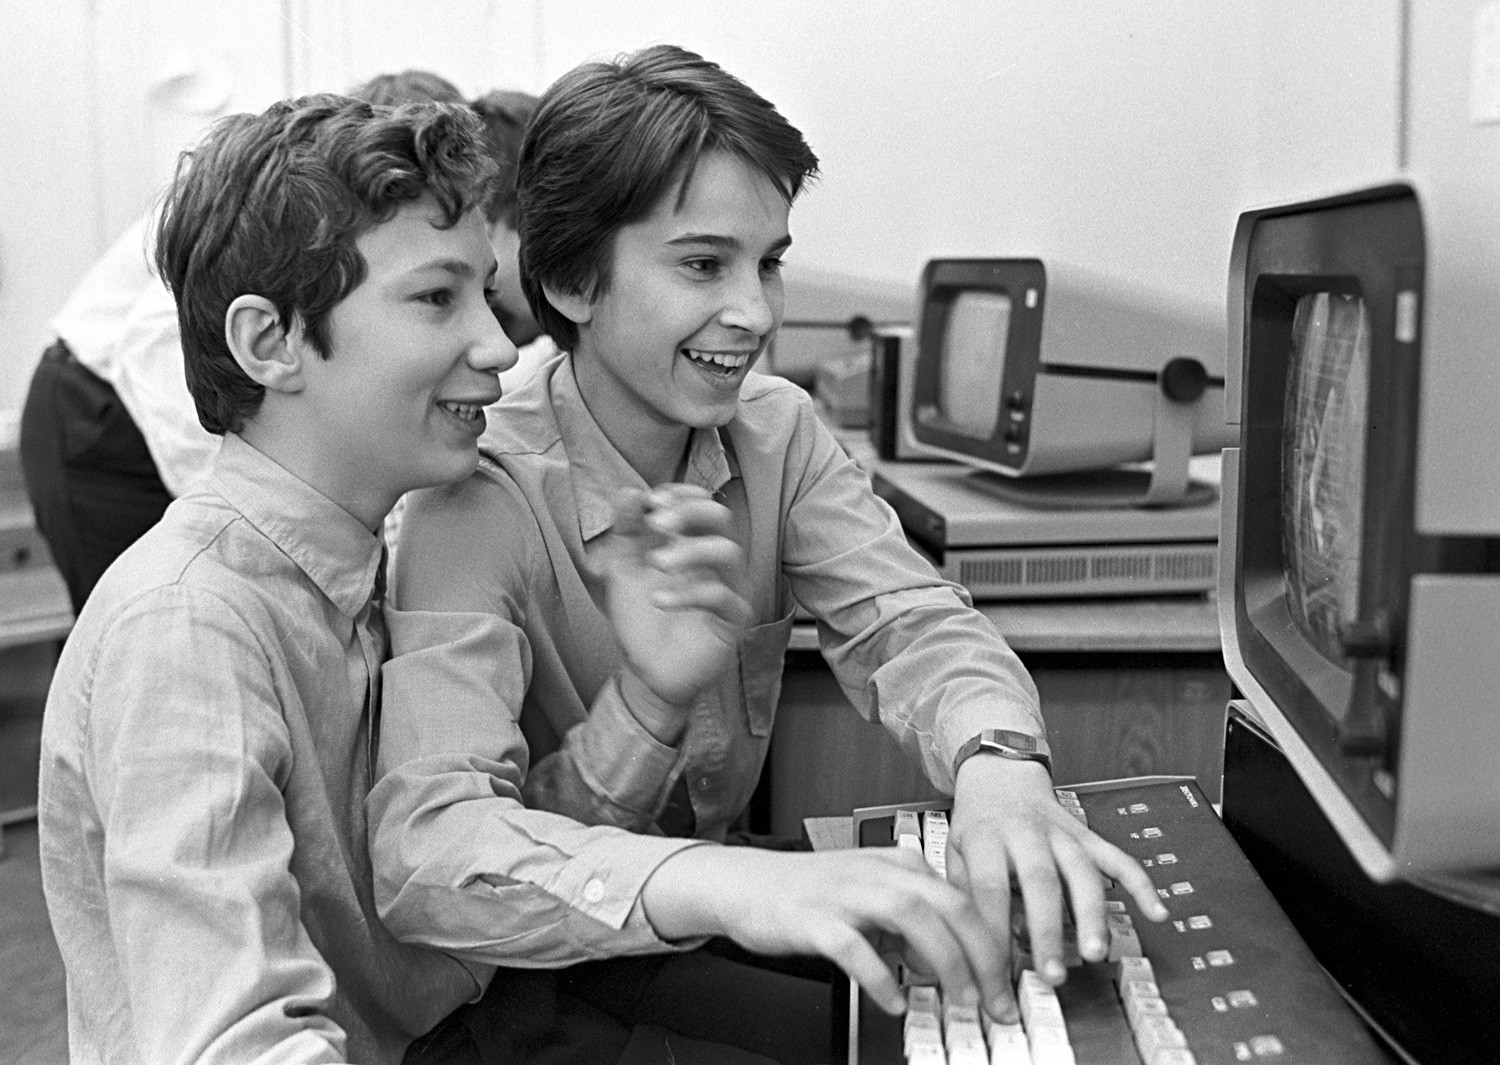 Персональные компьютеры для школы